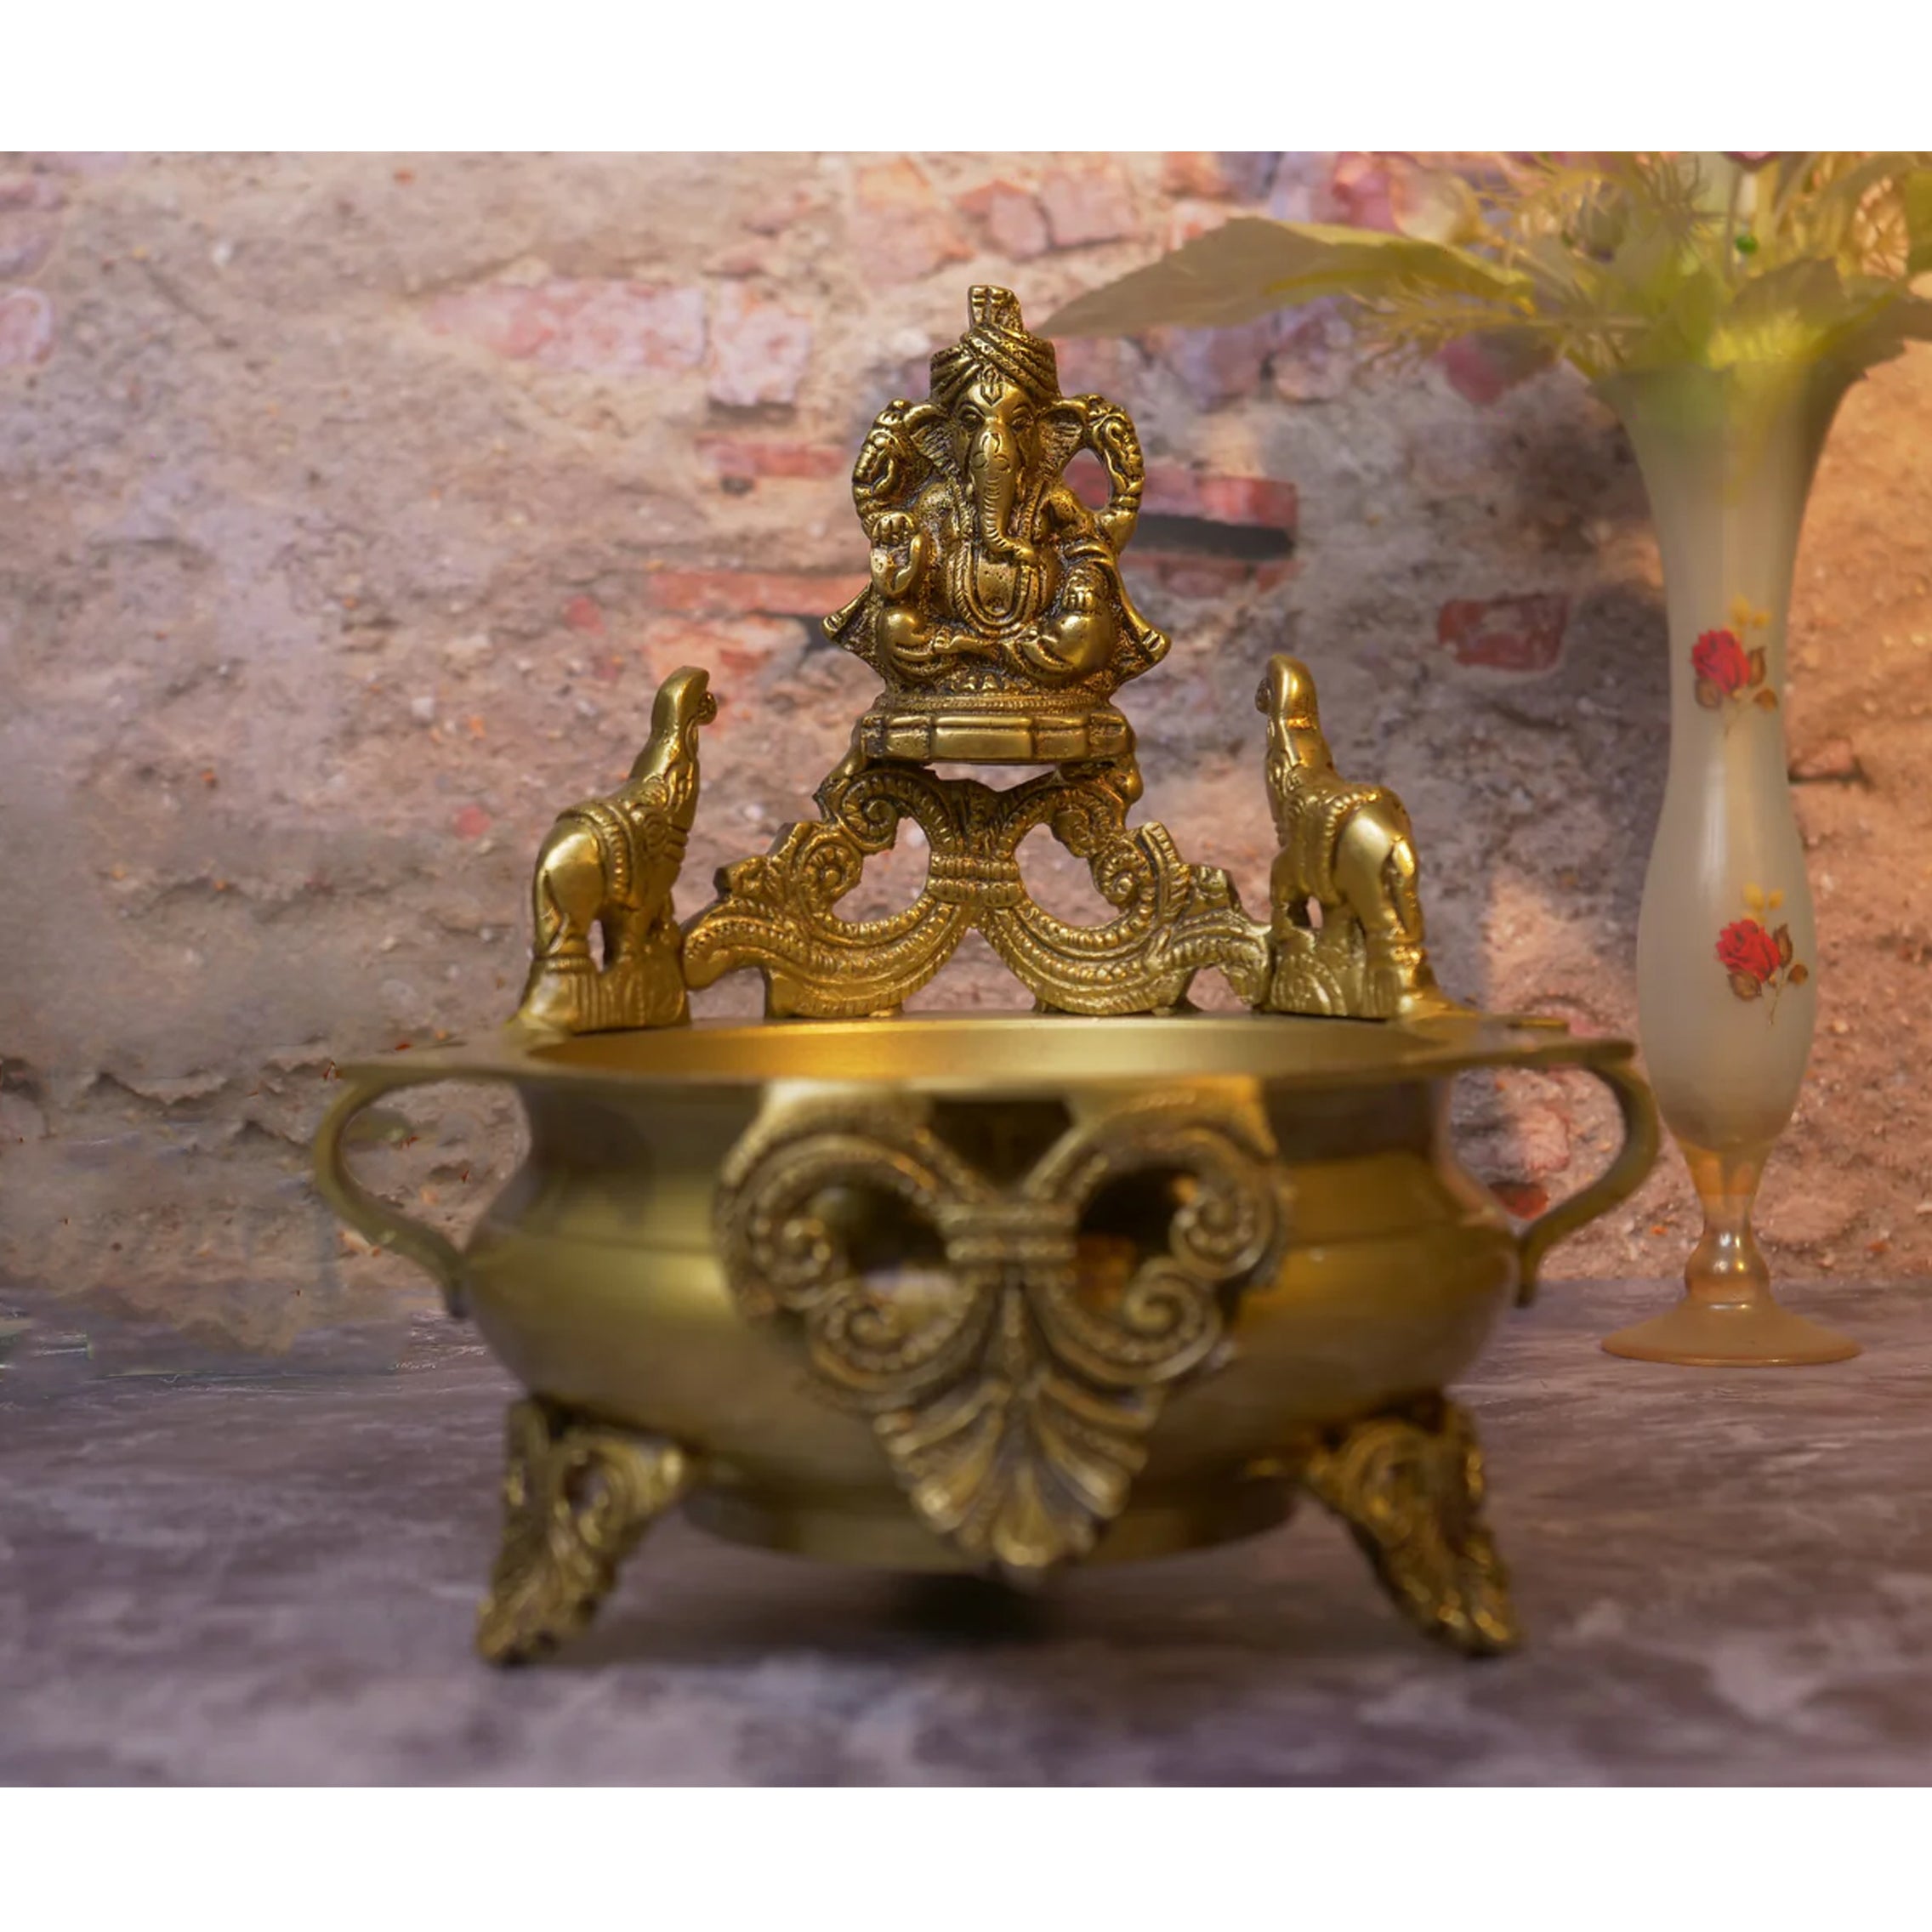 Brass Ganesha Design 7.5 Inches Urli, Antique Yellow